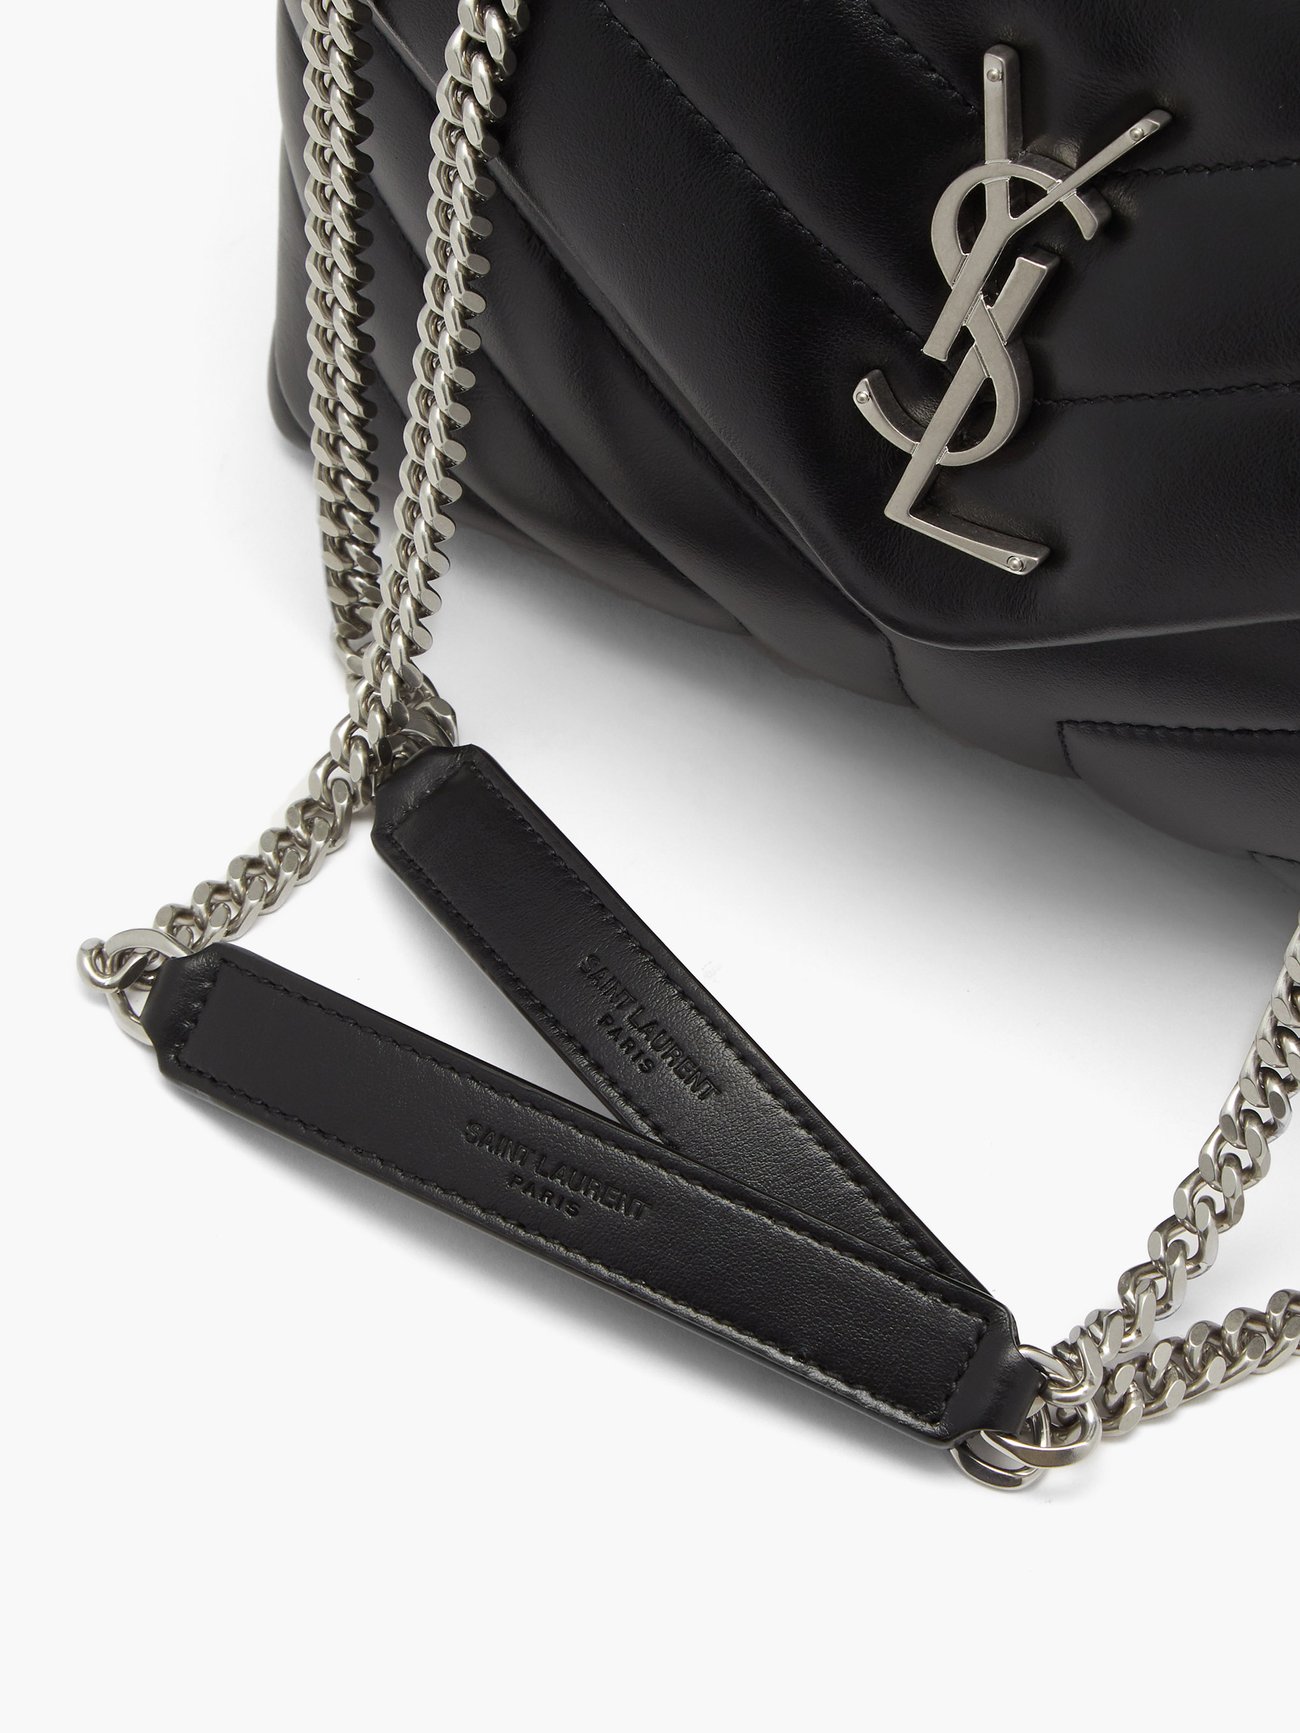 Saint Laurent Black Small Loulou Matelassé Leather Shoulder Bag 